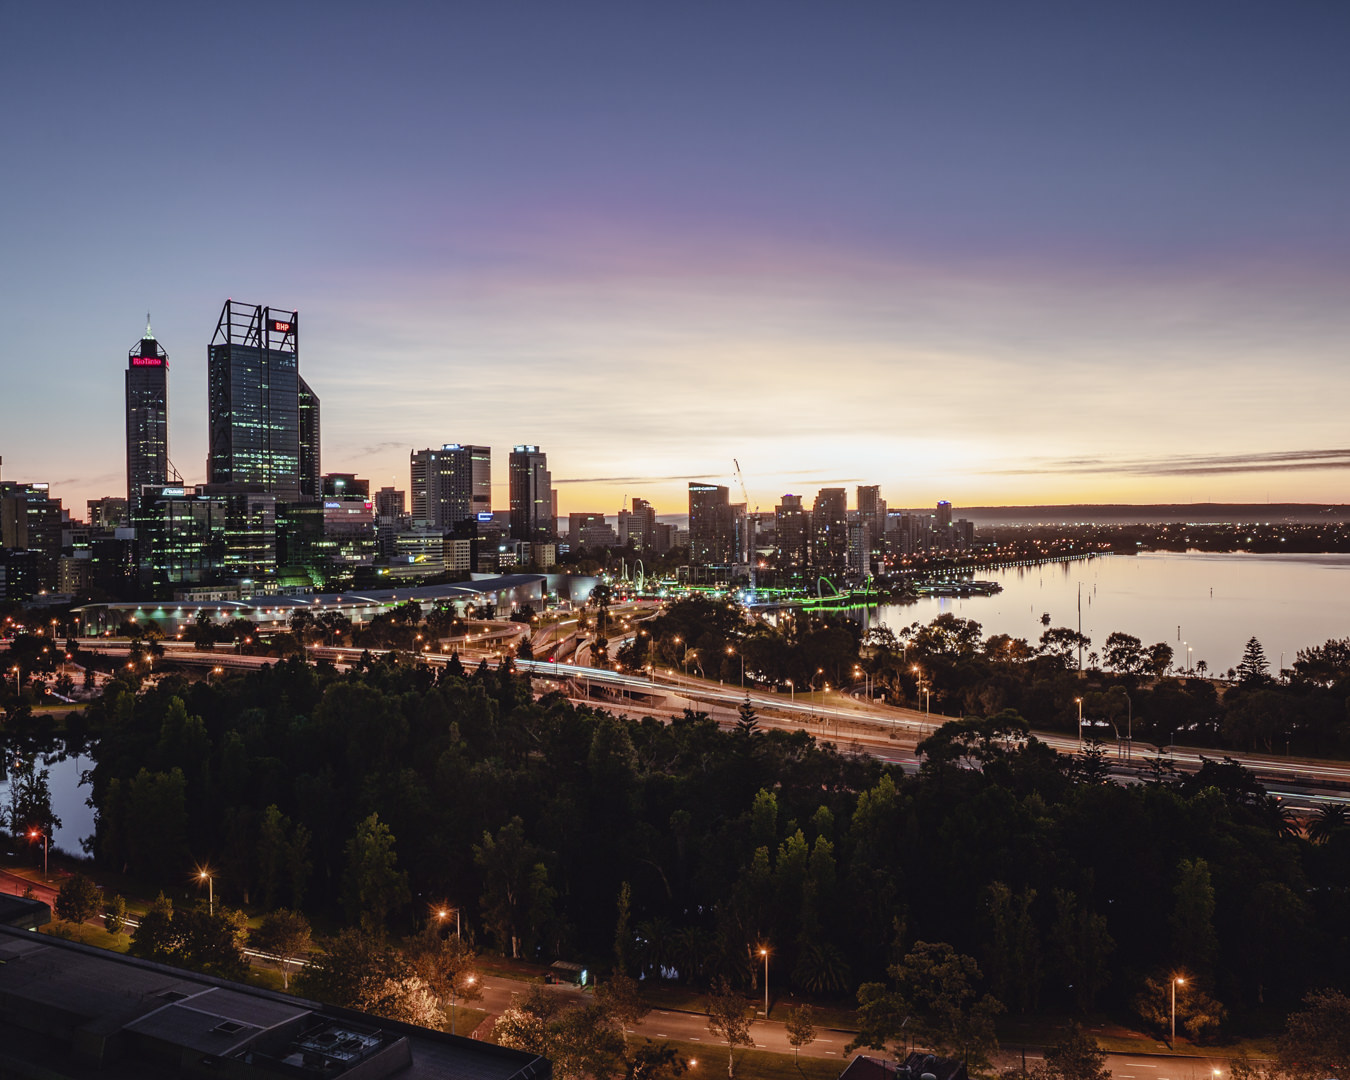 Perth city at night 